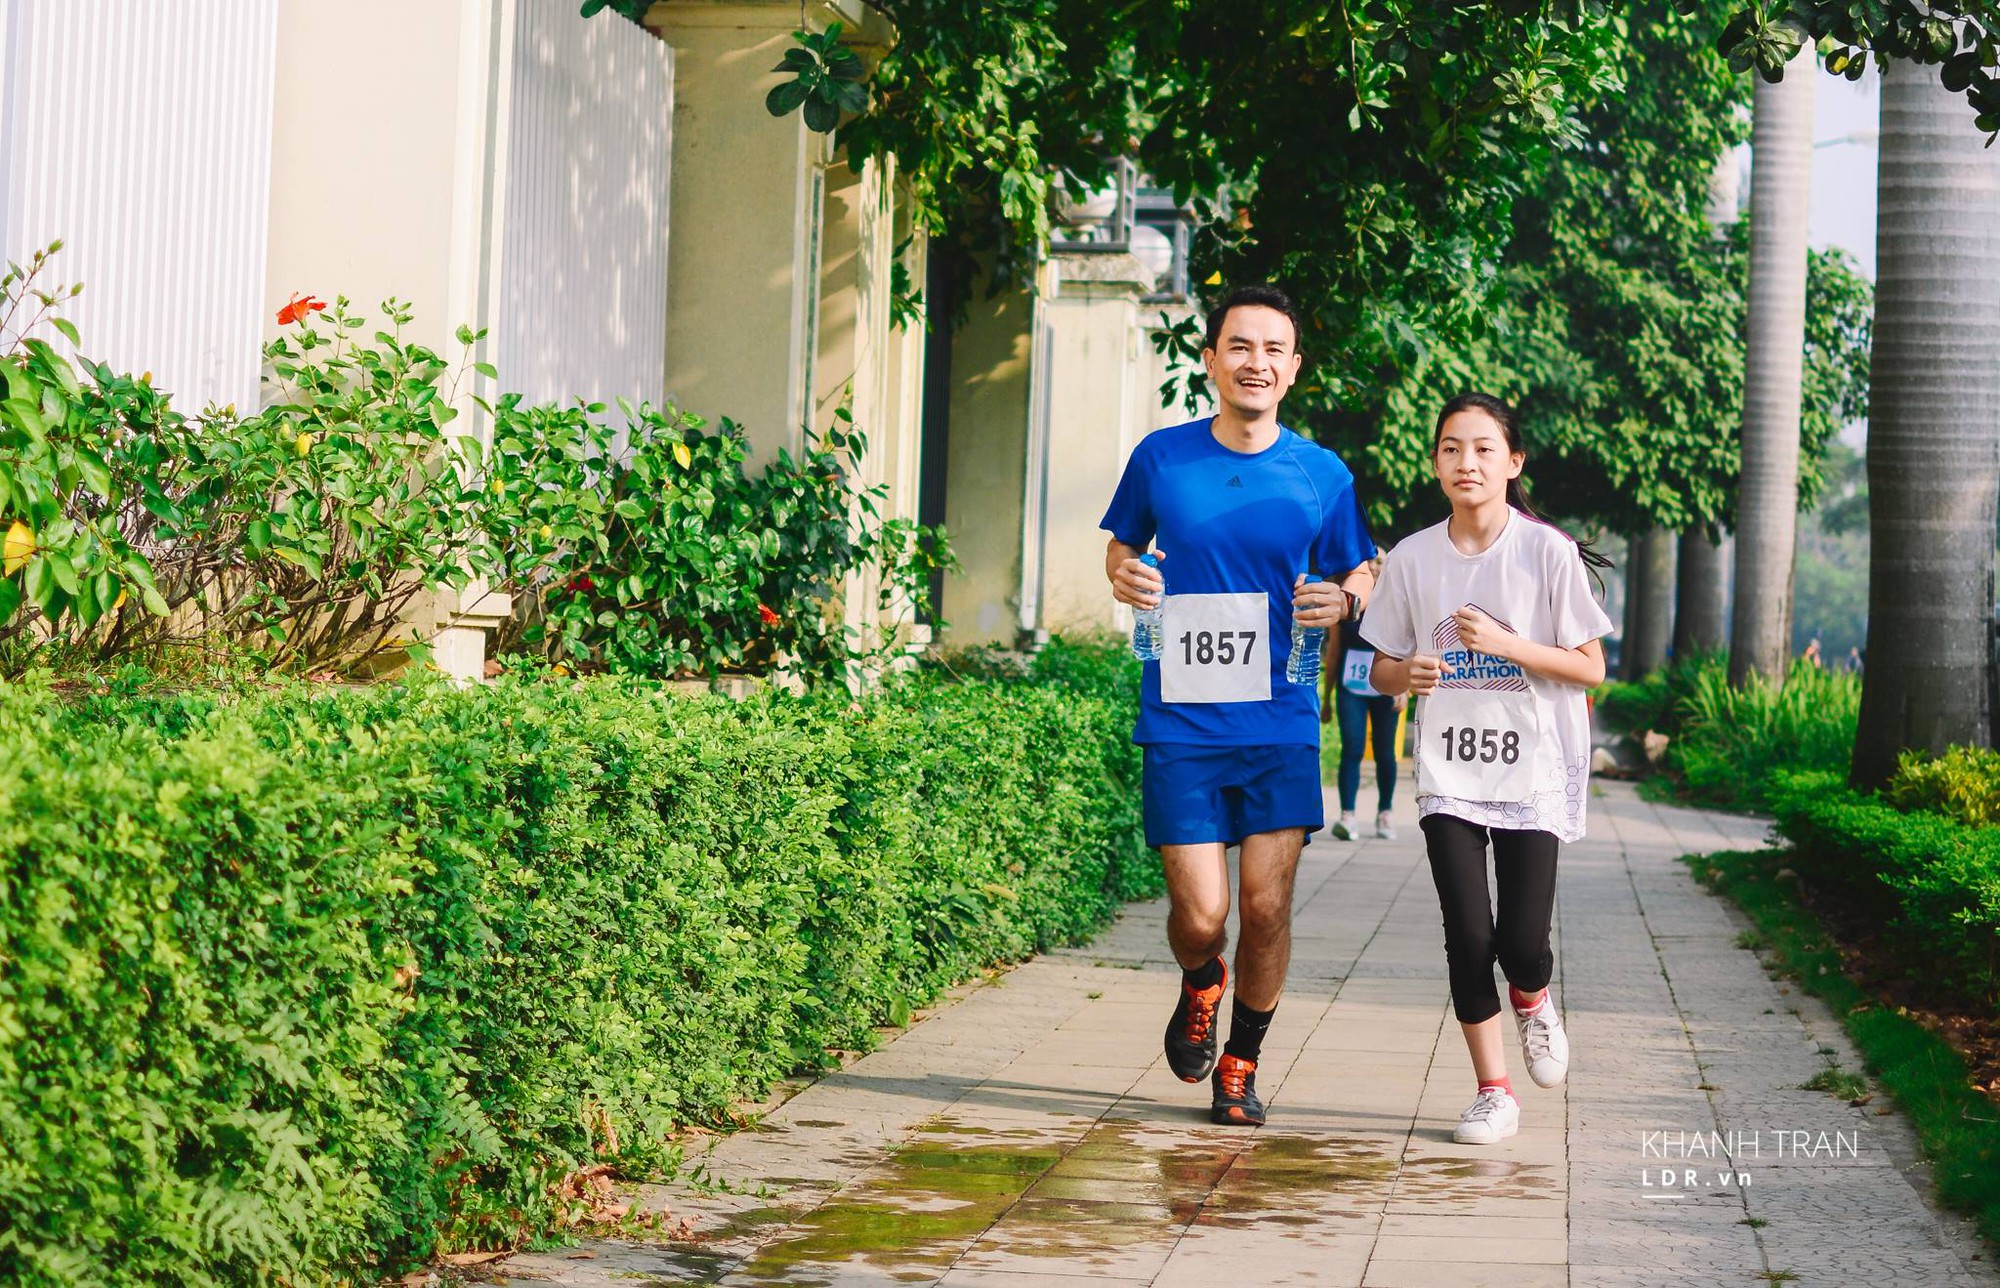 VĐV Nguyễn Quốc Tuấn, giải 3 21km LDR Half Marathon 2015 ''hi sinh'' cự ly dài để chạy cùng con gái